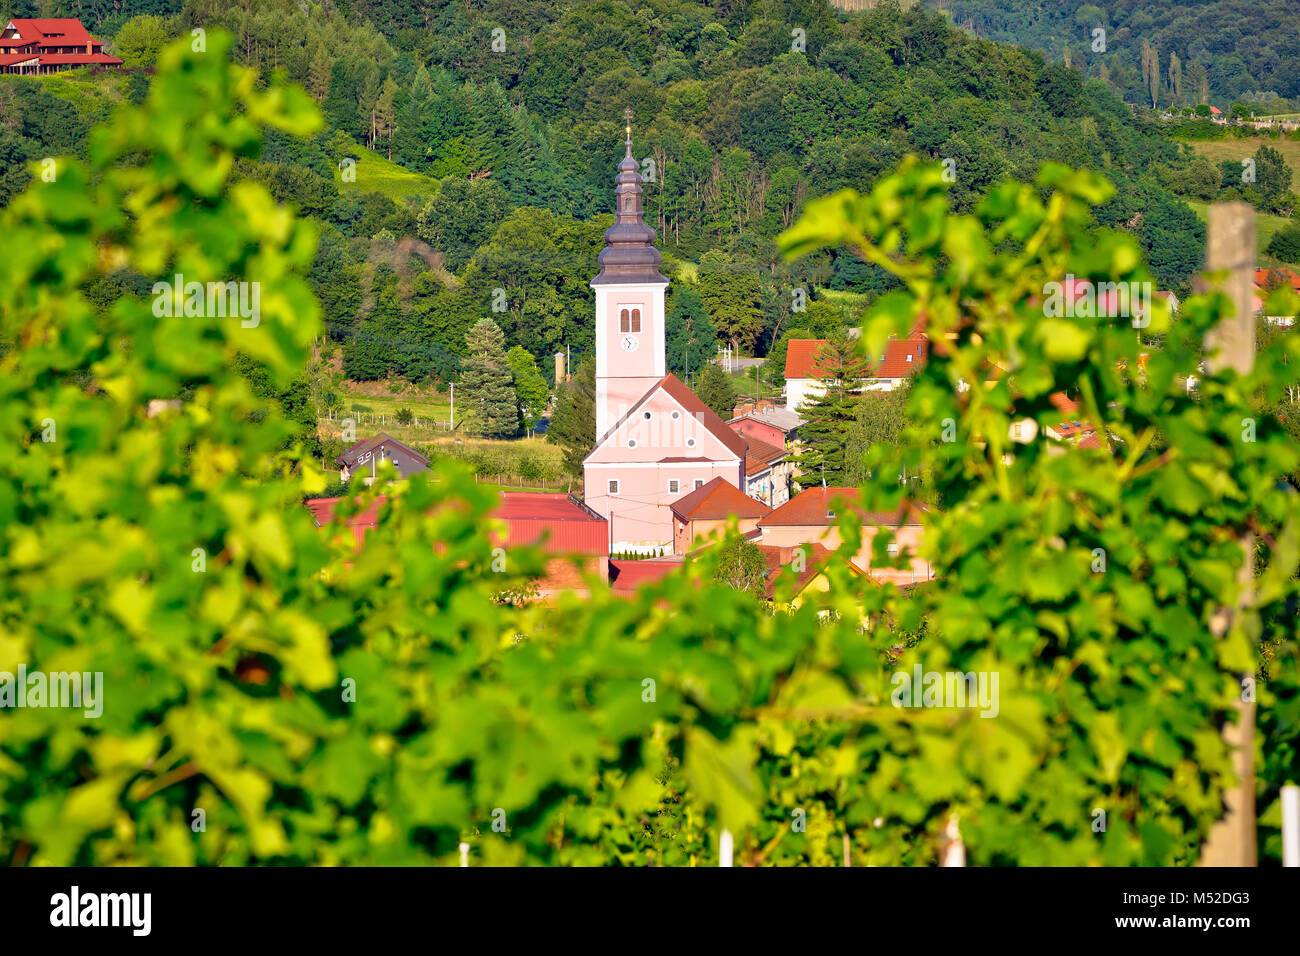 Dorf Strigova Türme und grüne Landschaft mit Blick auf die Weinberge, Medjimurje Region von Kroatien Stockfoto